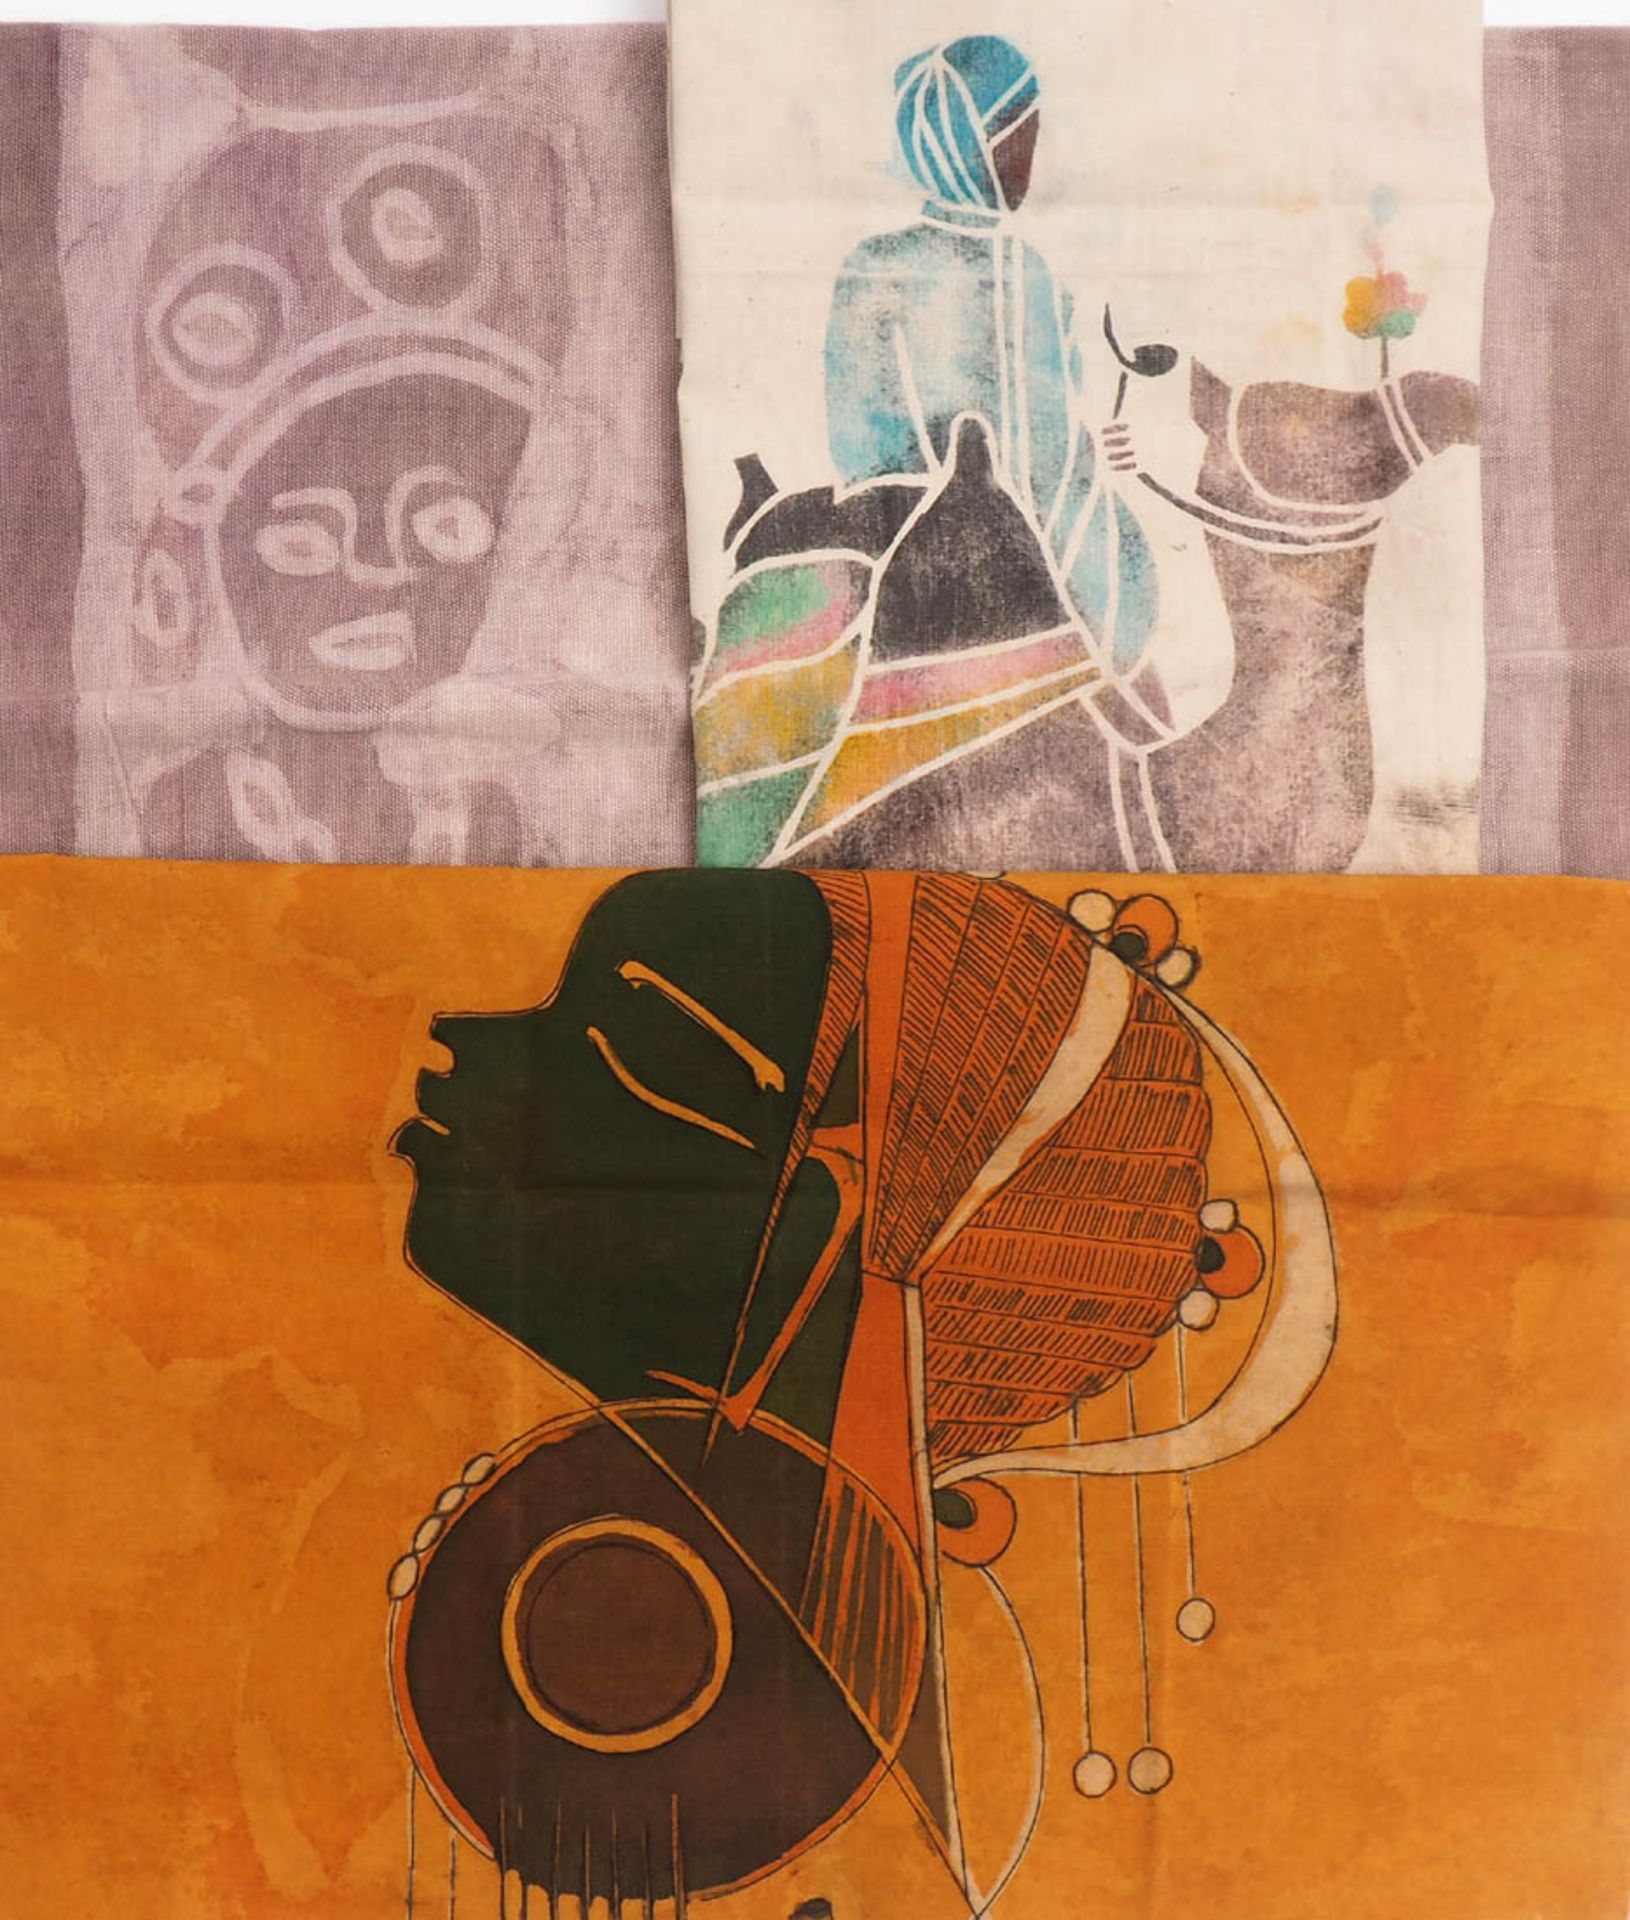 Drei Textilbilder, Afrika, 20.Jhdt. Baumwolle und Leinen, polychrom gefärbt. Unterschiedliche Größen